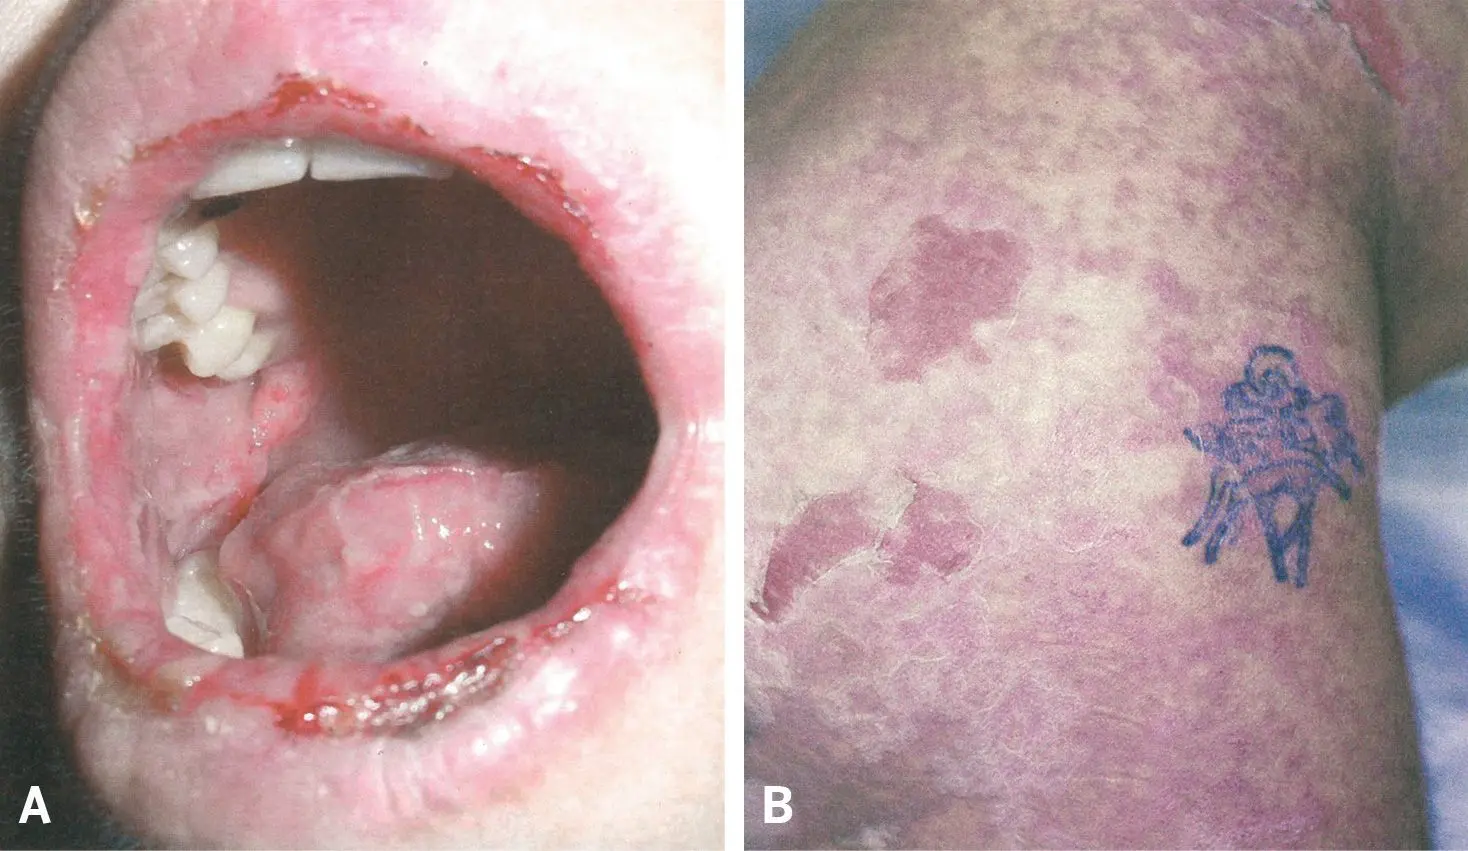 Figura 3. A) Síndrome de Stevens-Johnson por fenitoína. B) Necrólisis epidérmica tóxica por carbamazepina.